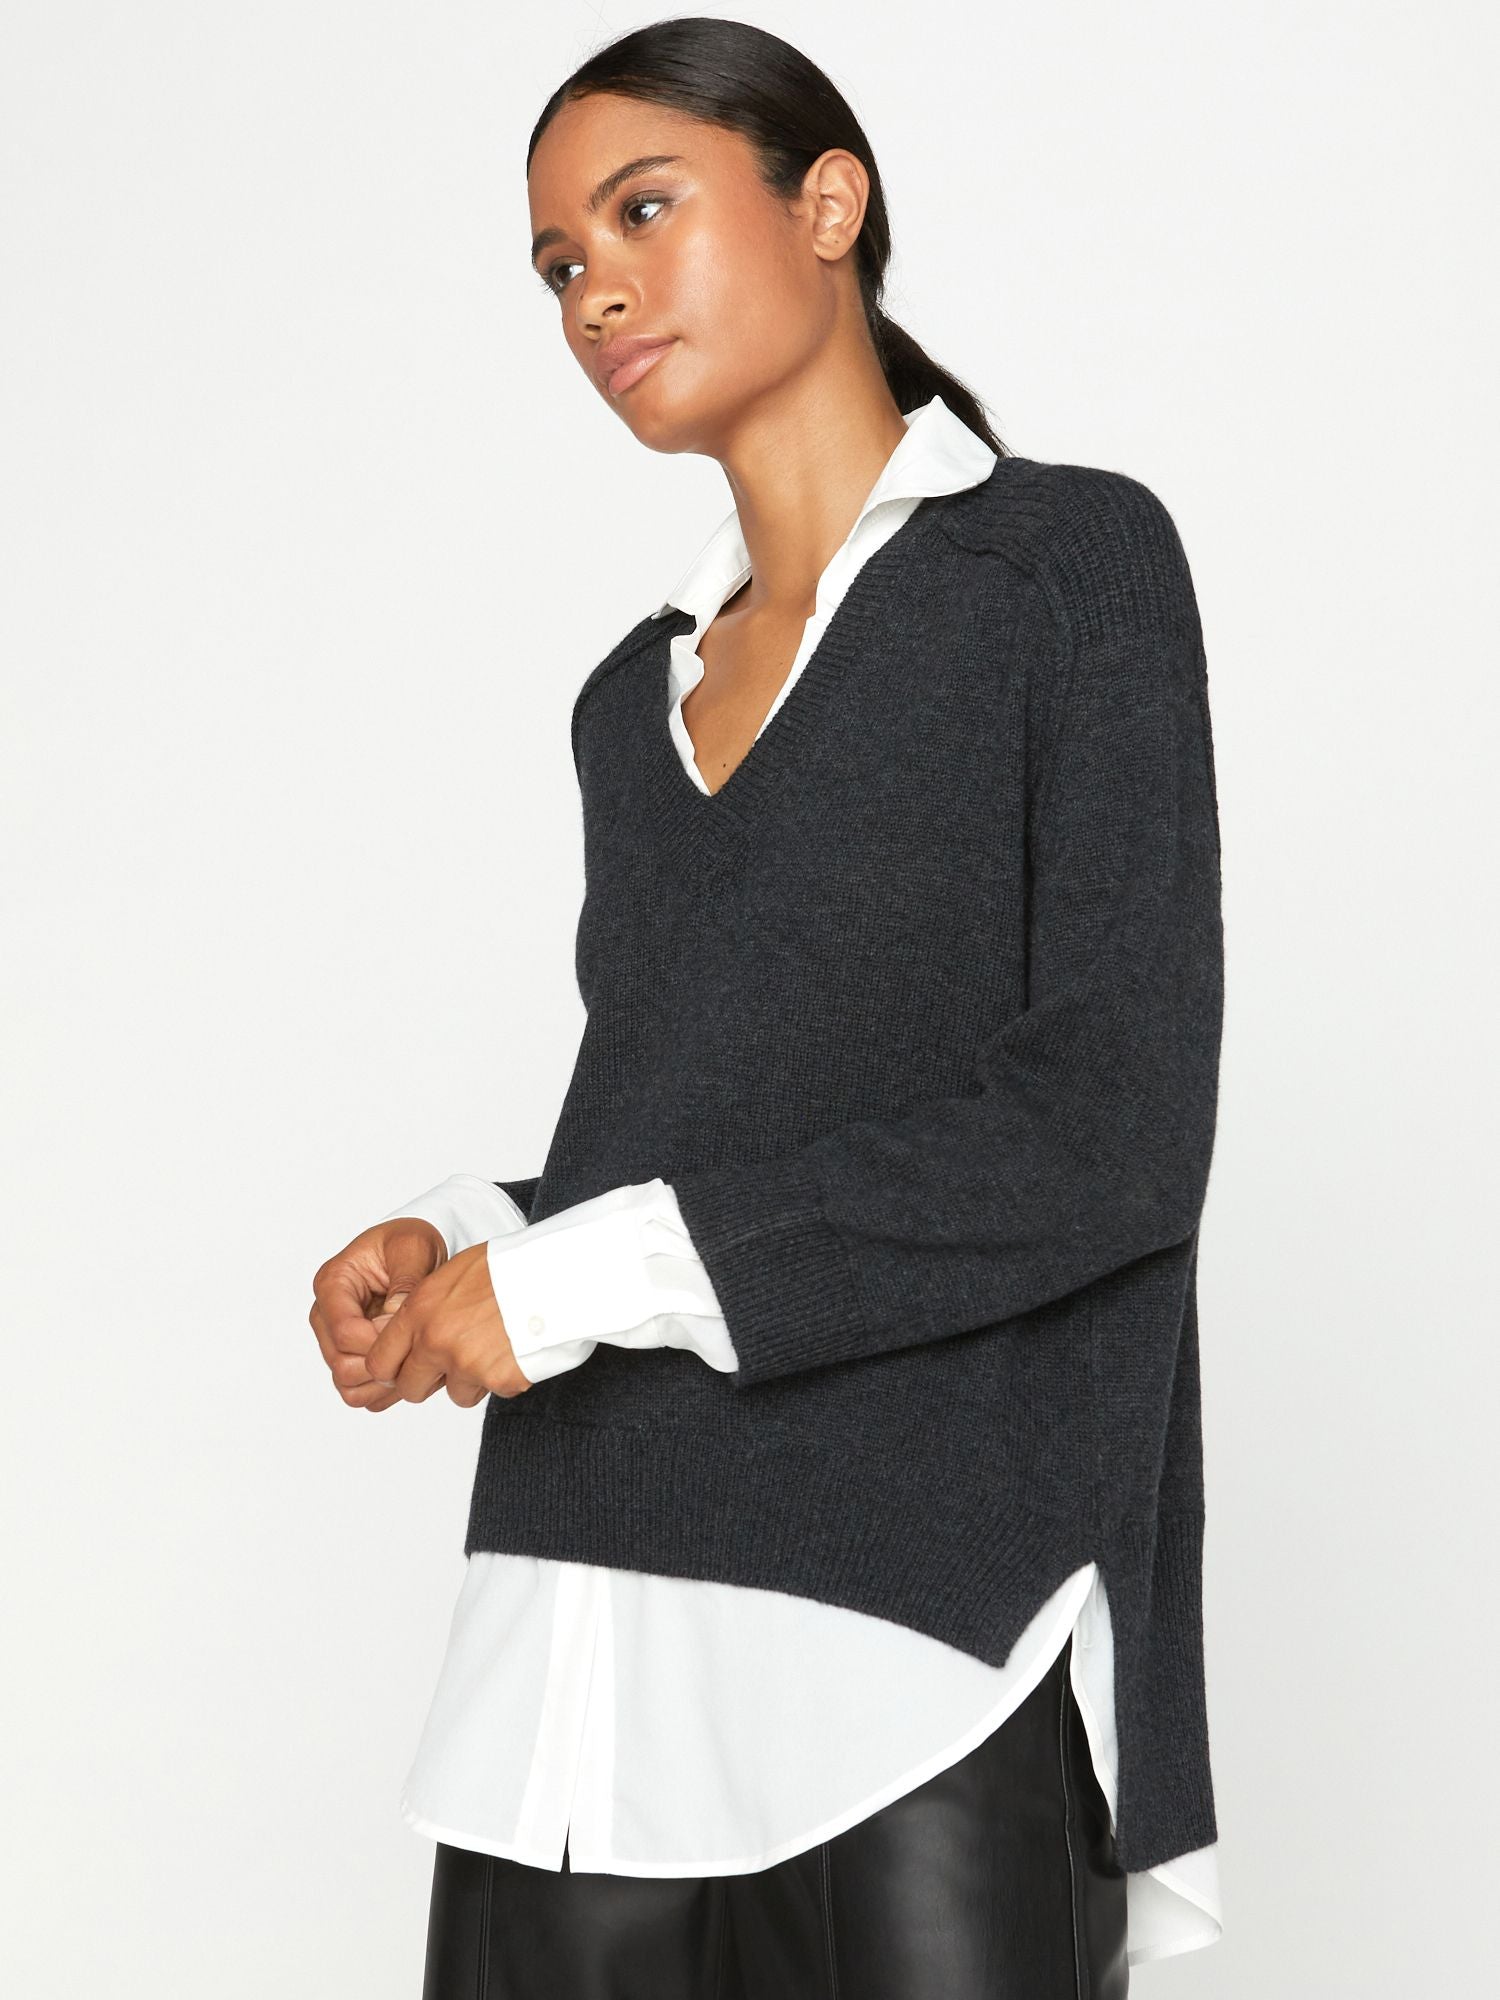 Brochu Walker Women's Lace V-neck Layered Sweater in Black